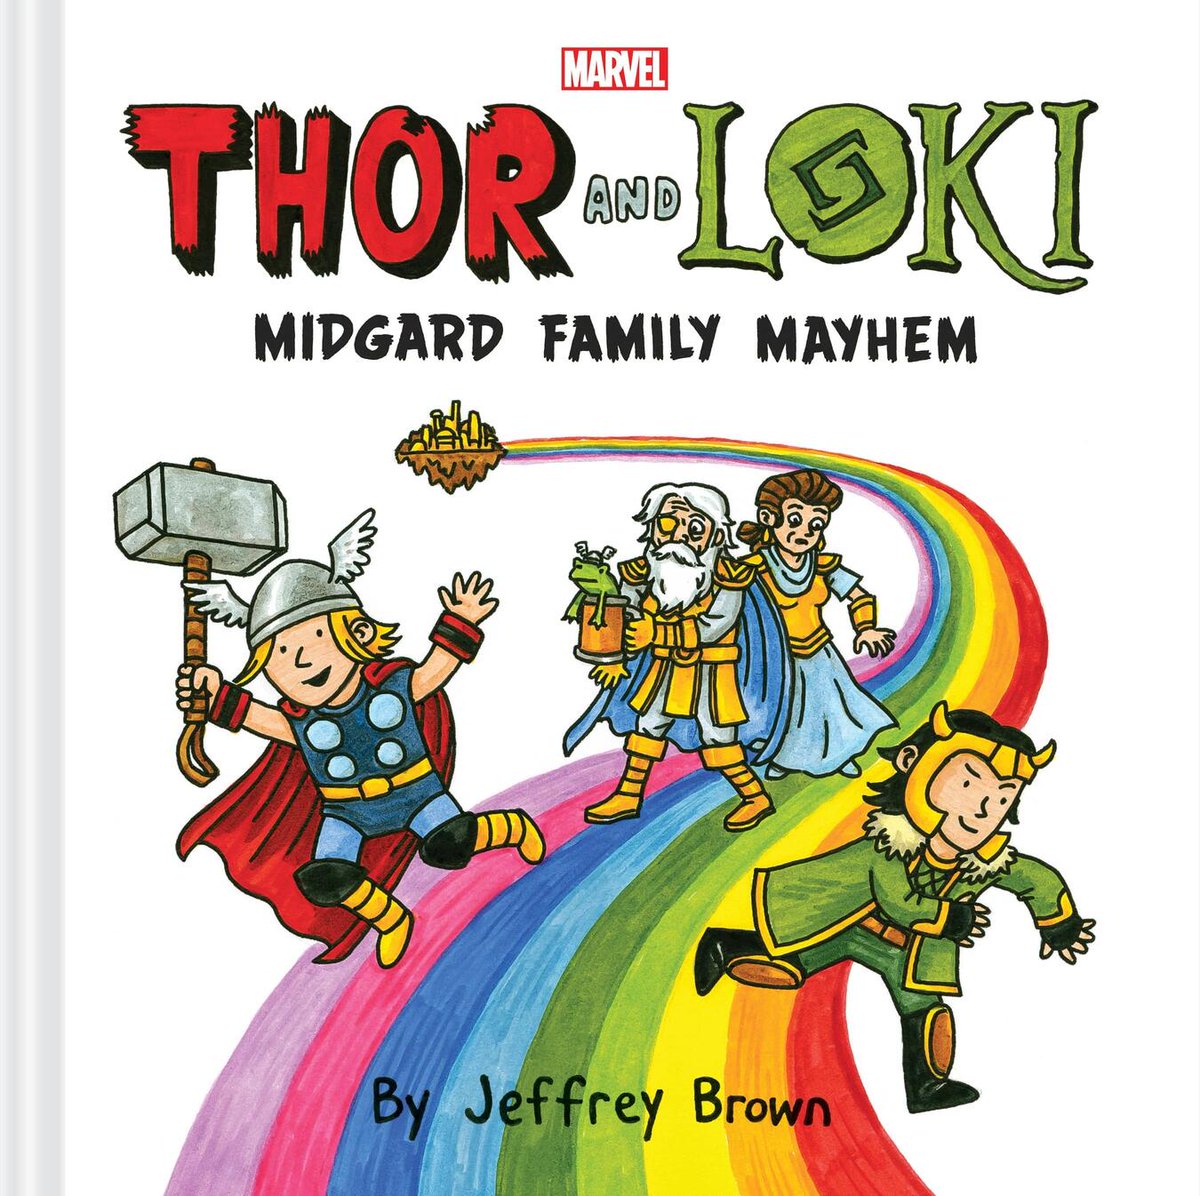 RT @ThorLawyer: Thor and Loki: Midgard Family Mayhem is peak fiction- https://t.co/Lqb5dMXWH1